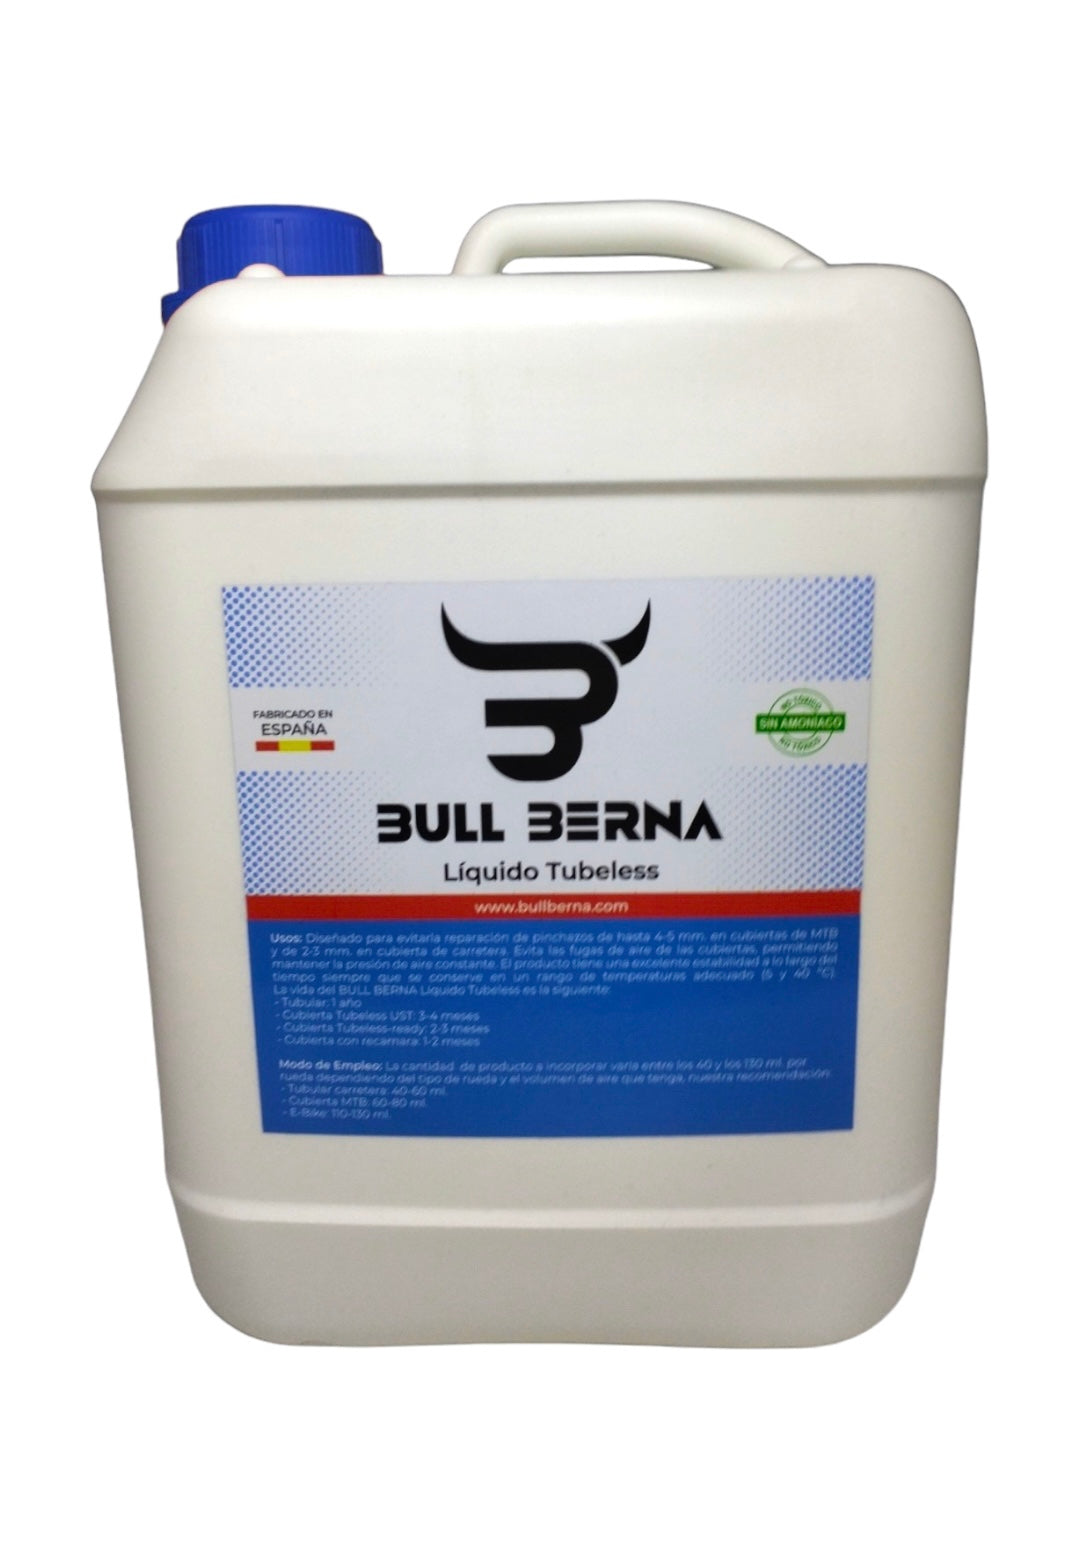 BULL BERNA Sellante Tubeless MTB/Liquido Tubeless sin Amoniaco/Sellante  Antipinchazos Bullberna/Reparacion pinchazos Todos los neumaticos